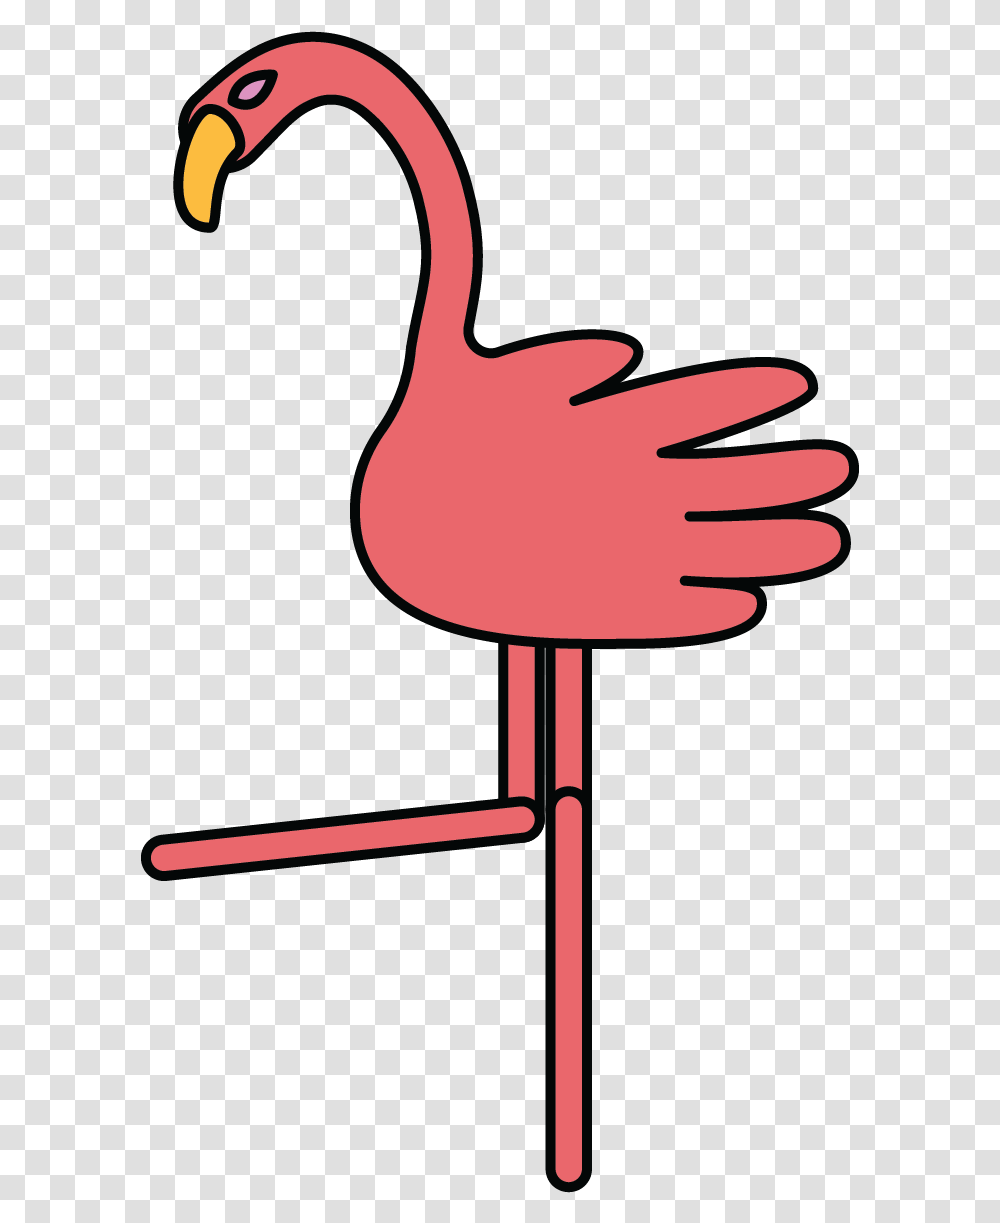 Flamingo Illustration Dot, Finger, Hand, Arm, Wood Transparent Png